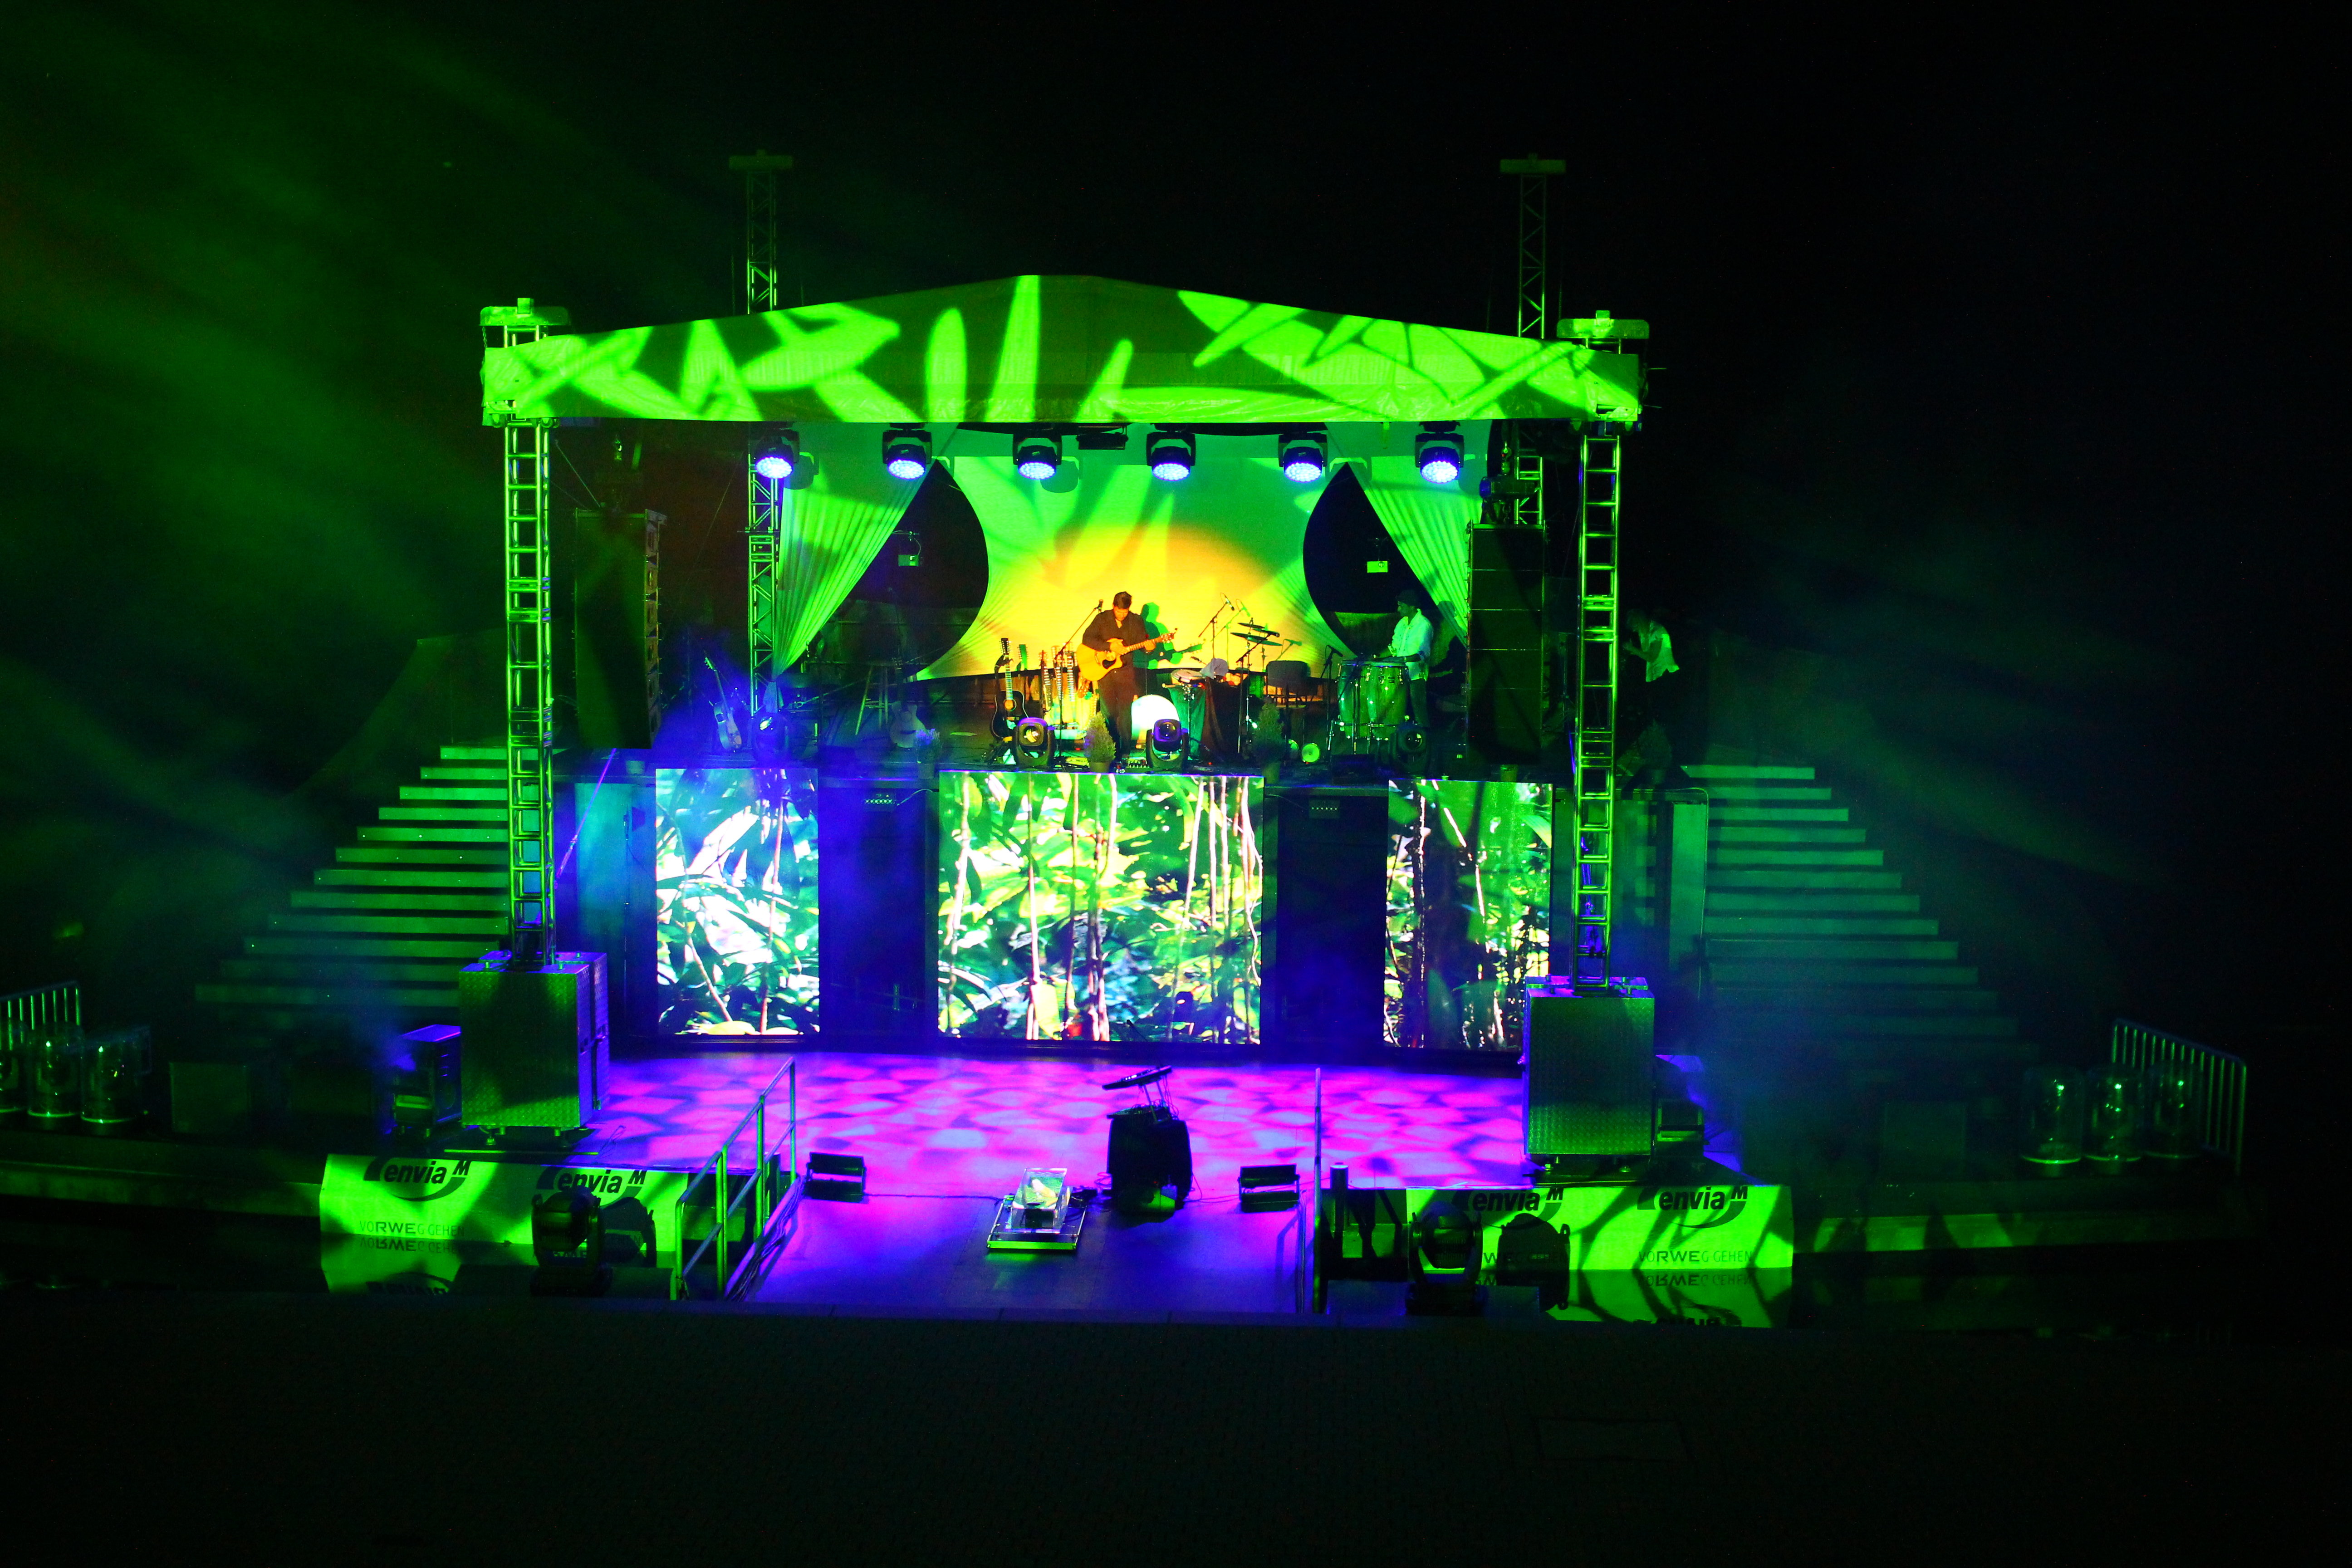 Das Bild zeigt die Seebühne in Aktion bei Nacht. Eine Bänd spielt und die Bühne ist in bunten Farben beleuchtet.